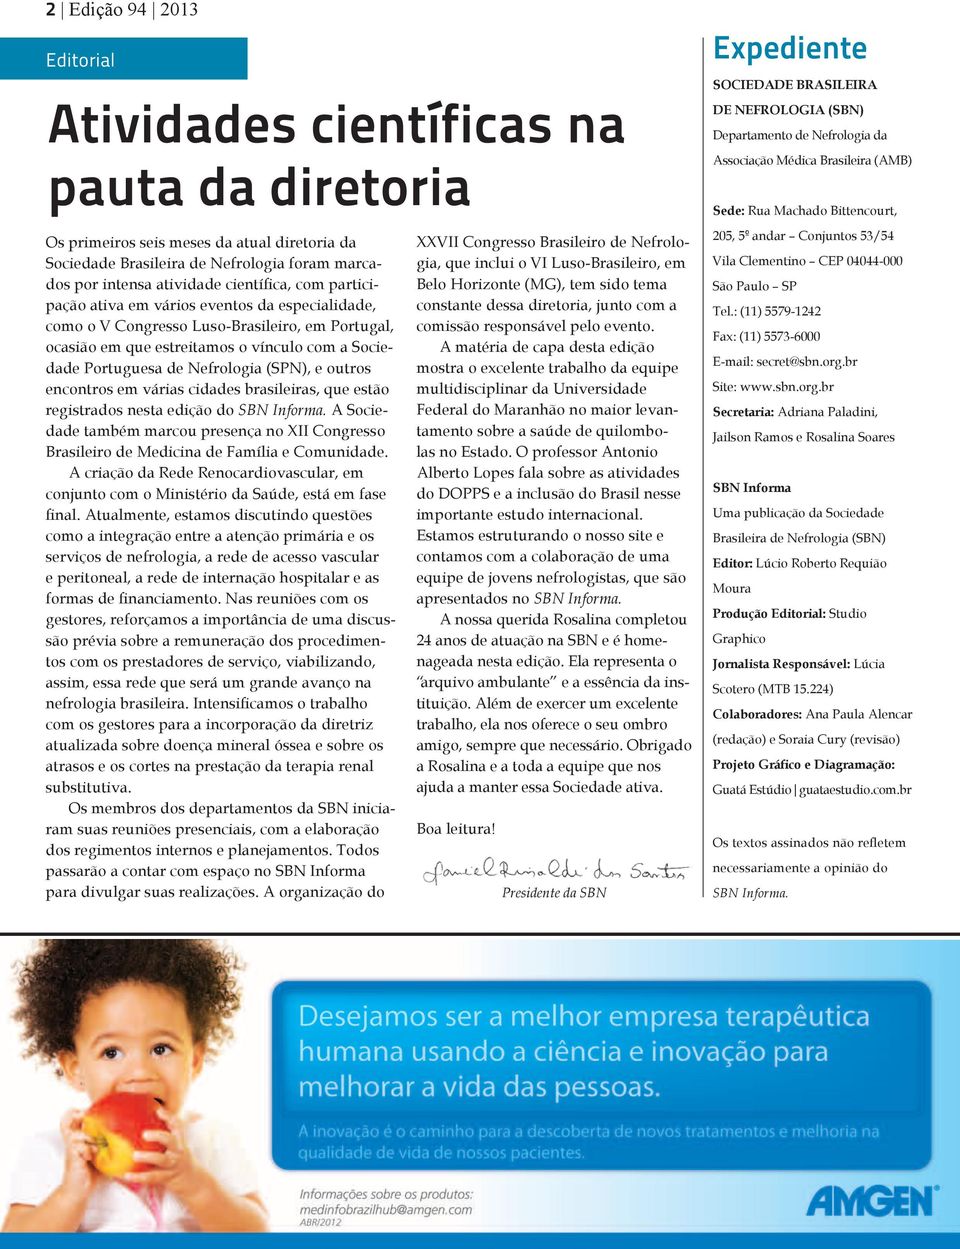 (SPN), e outros encontros em várias cidades brasileiras, que estão registrados nesta edição do SBN Informa.